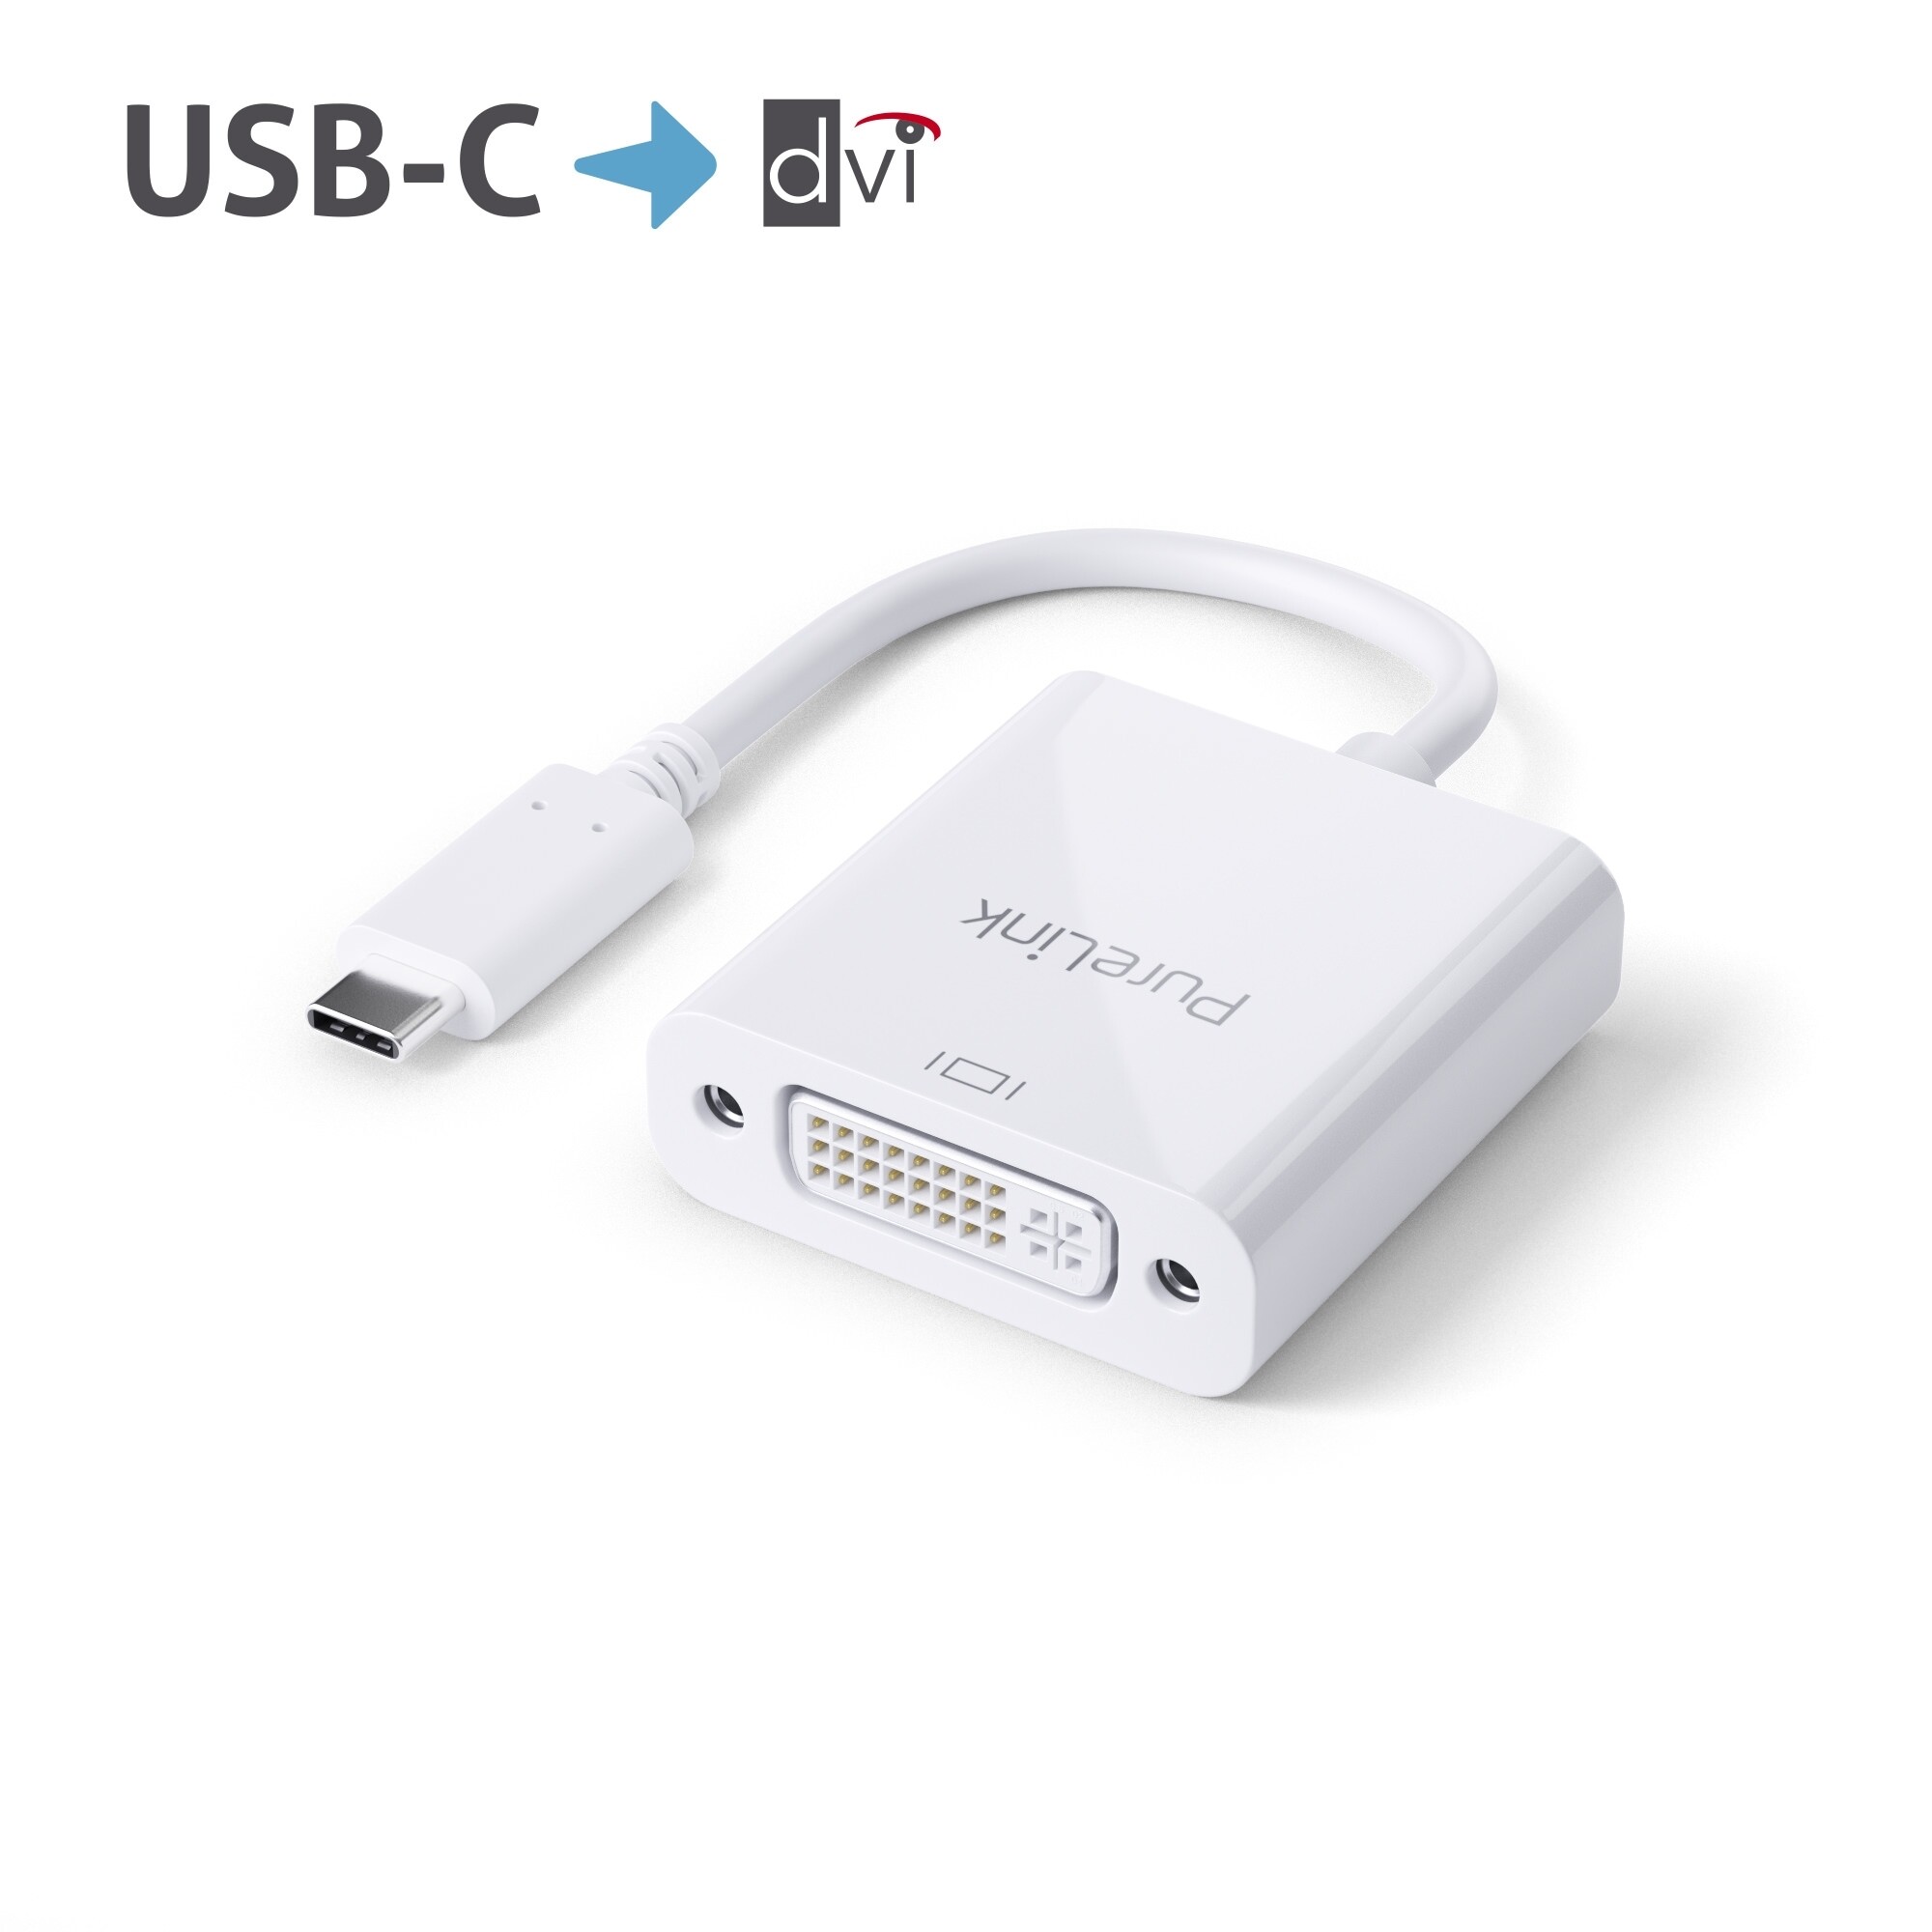 Purelink-IS190-USB-C-auf-DVI-Adapter-0-10m-weiss